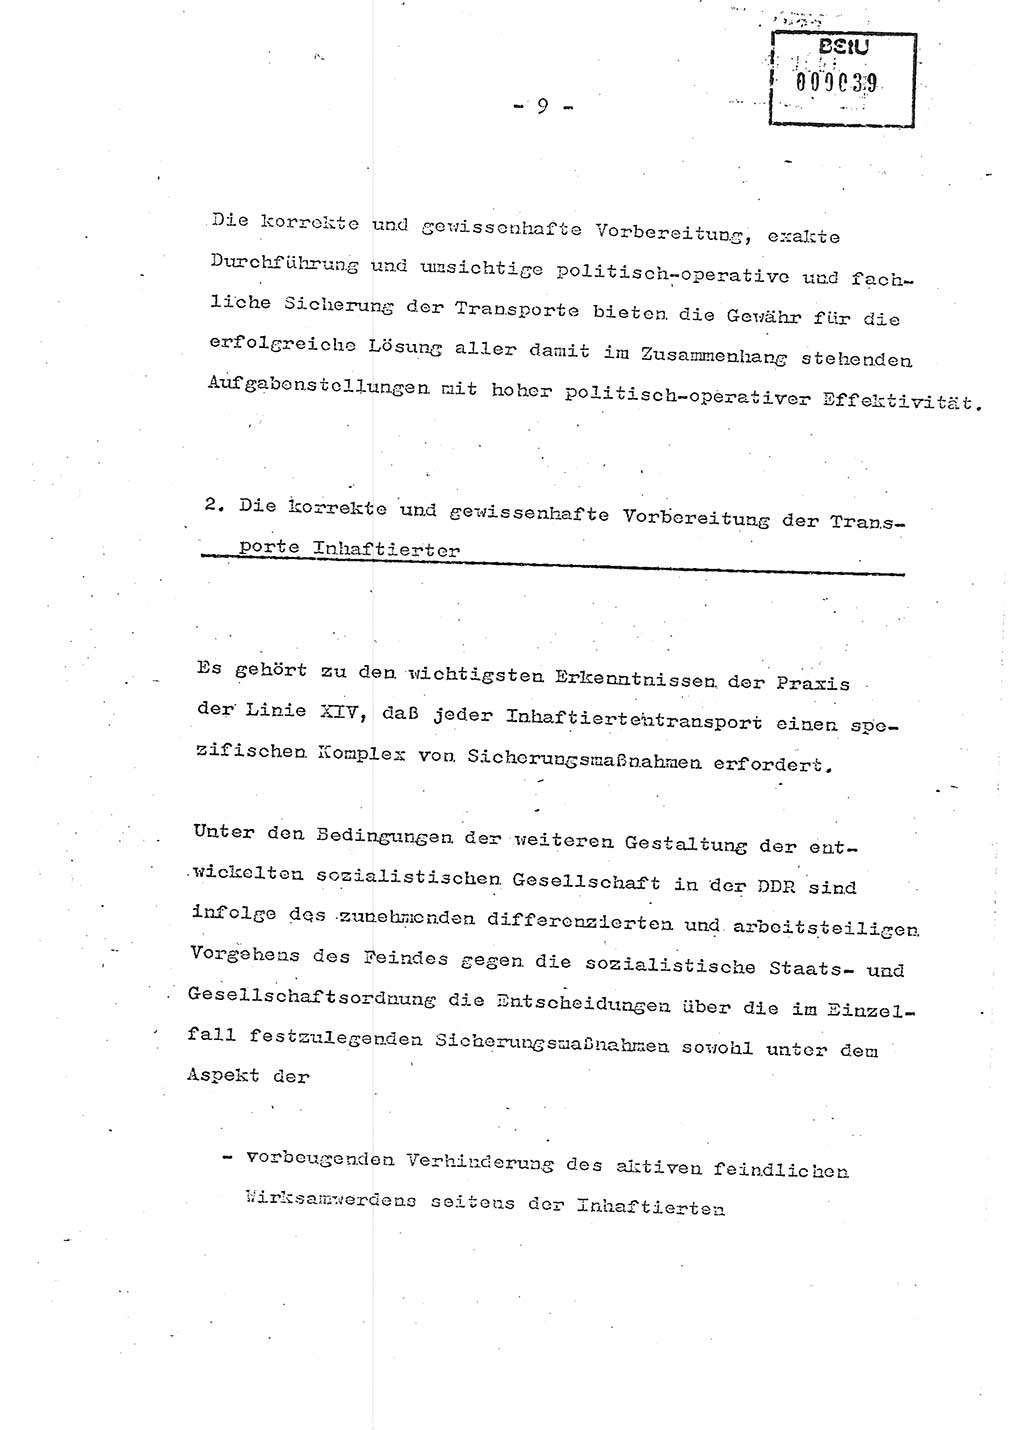 Schulungsmaterial Exemplar-Nr.: 7, Ministerium für Staatssicherheit [Deutsche Demokratische Republik (DDR)], Abteilung (Abt.) ⅩⅣ, Berlin 1986, Seite 9 (Sch.-Mat. Expl. 7 MfS DDR Abt. ⅩⅣ /86 1986, S. 9)